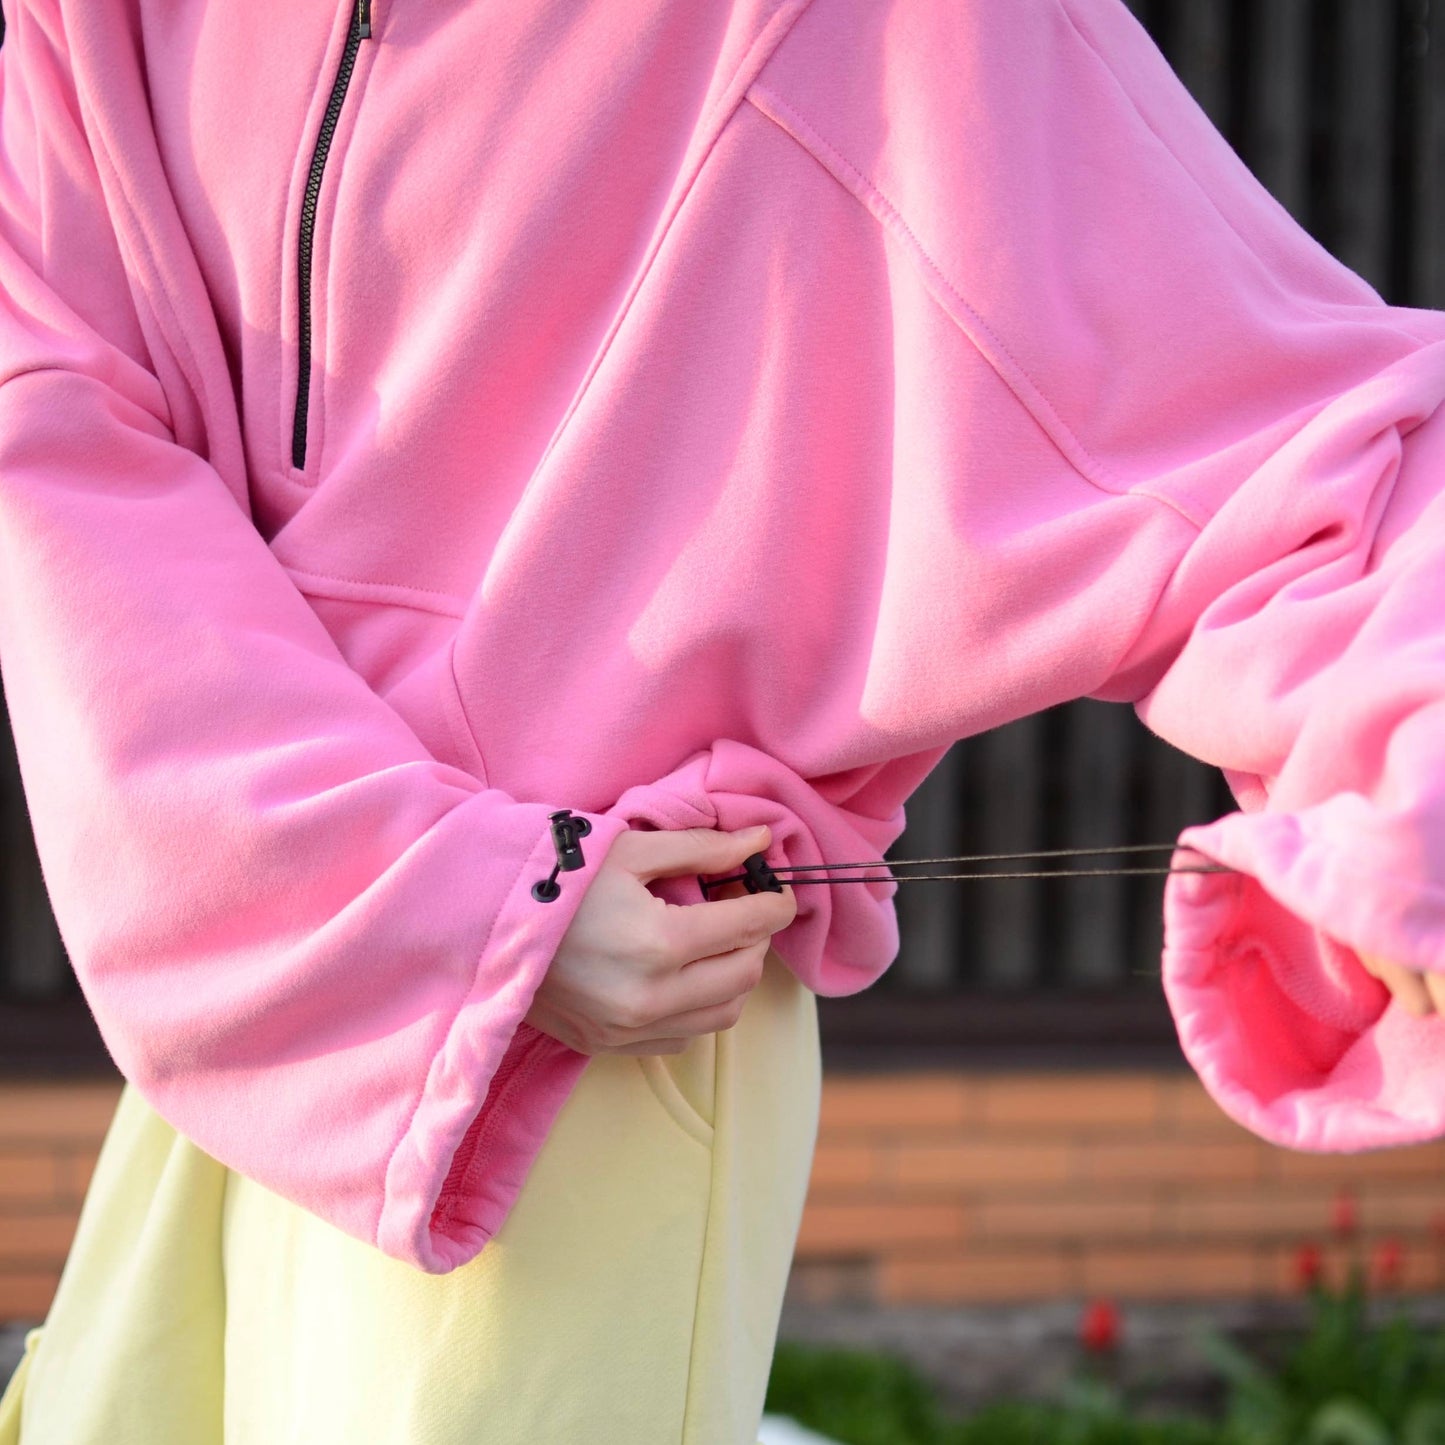 Pink hoodie